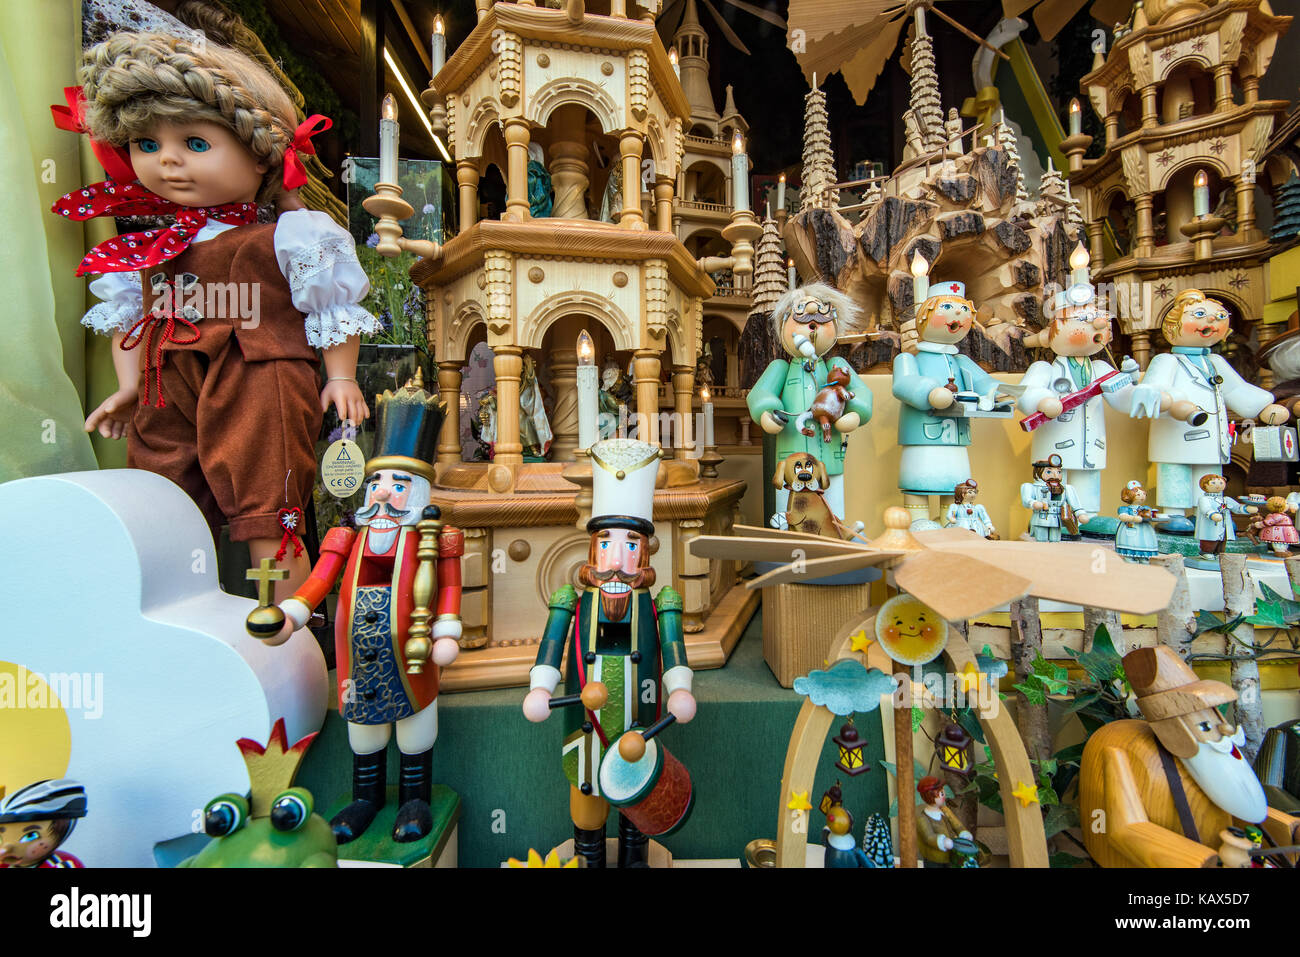 Porzellan Puppe und mehr Spielzeug auf dem Display in einem Schaufenster Rothenburg o d Tauber Bayern Deutschland